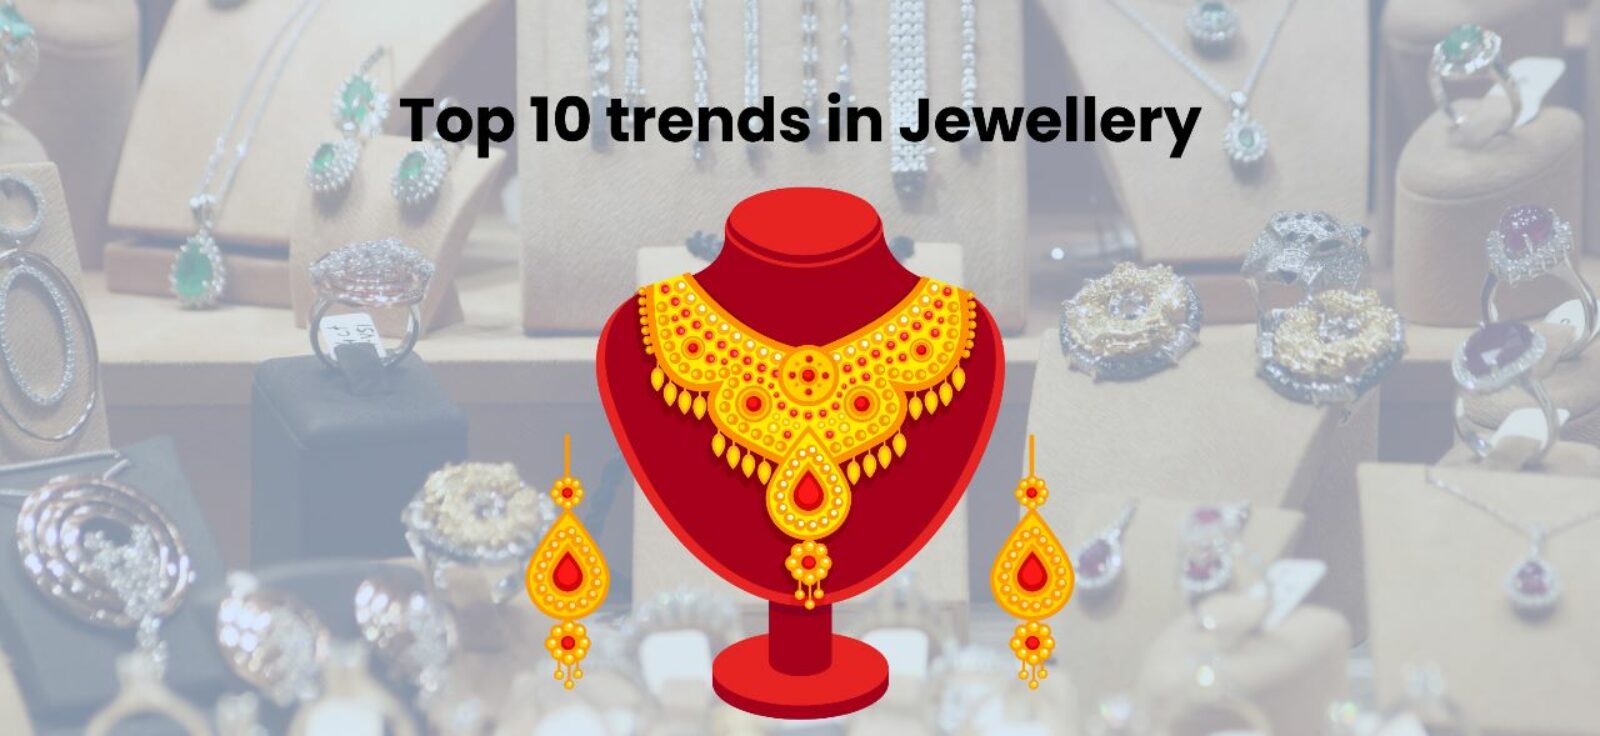 Top 10 trends in Jewellery